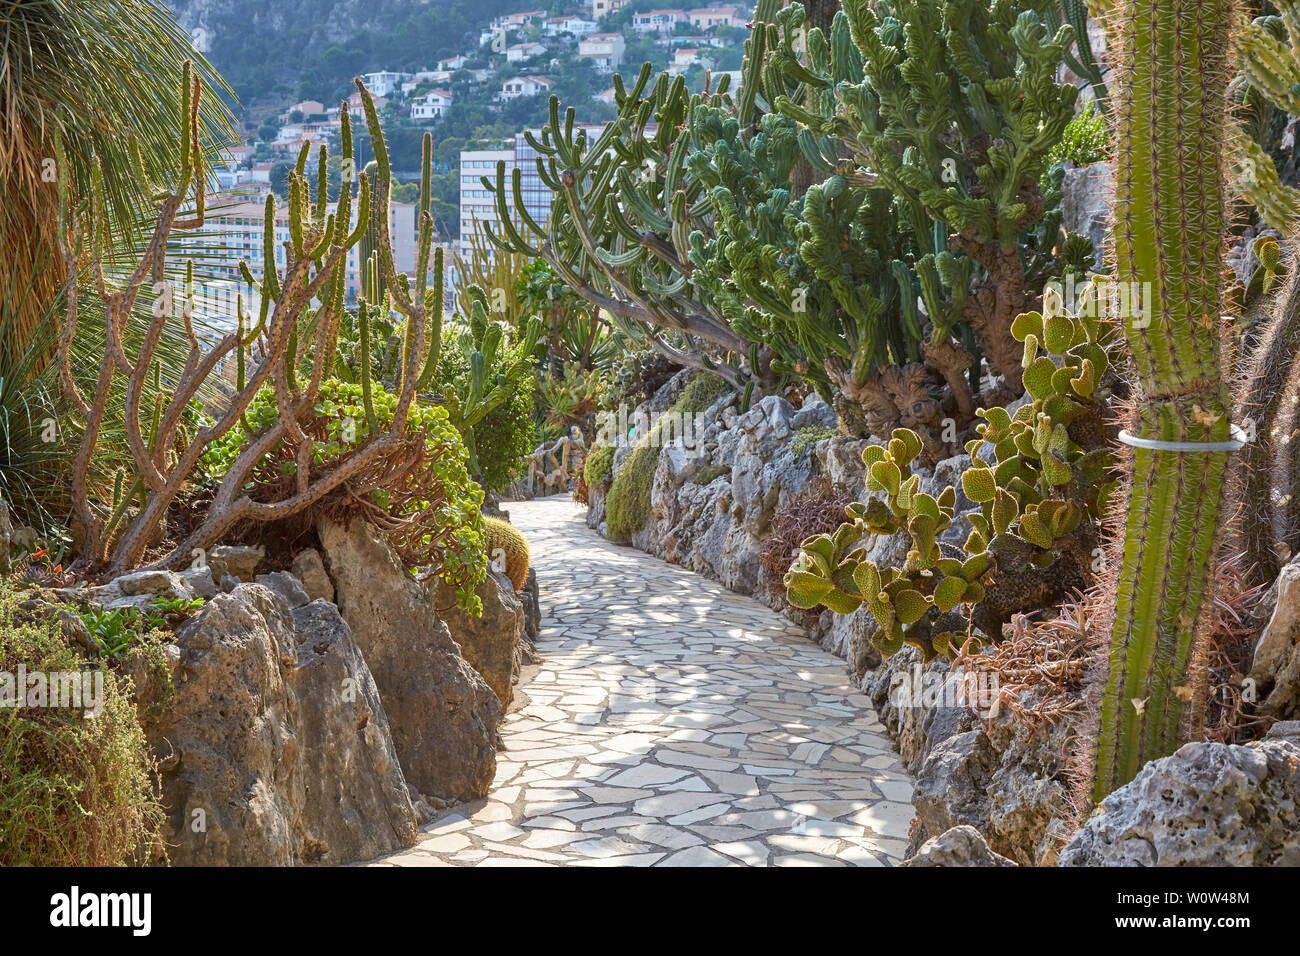 MONTE CARLO, MONACO - 20. AUGUST 2016: Der exotische Garten mit seltenen sukkulenten Pflanzen an einem sonnigen Sommertag in Monte Carlo, Monaco. Stockfoto